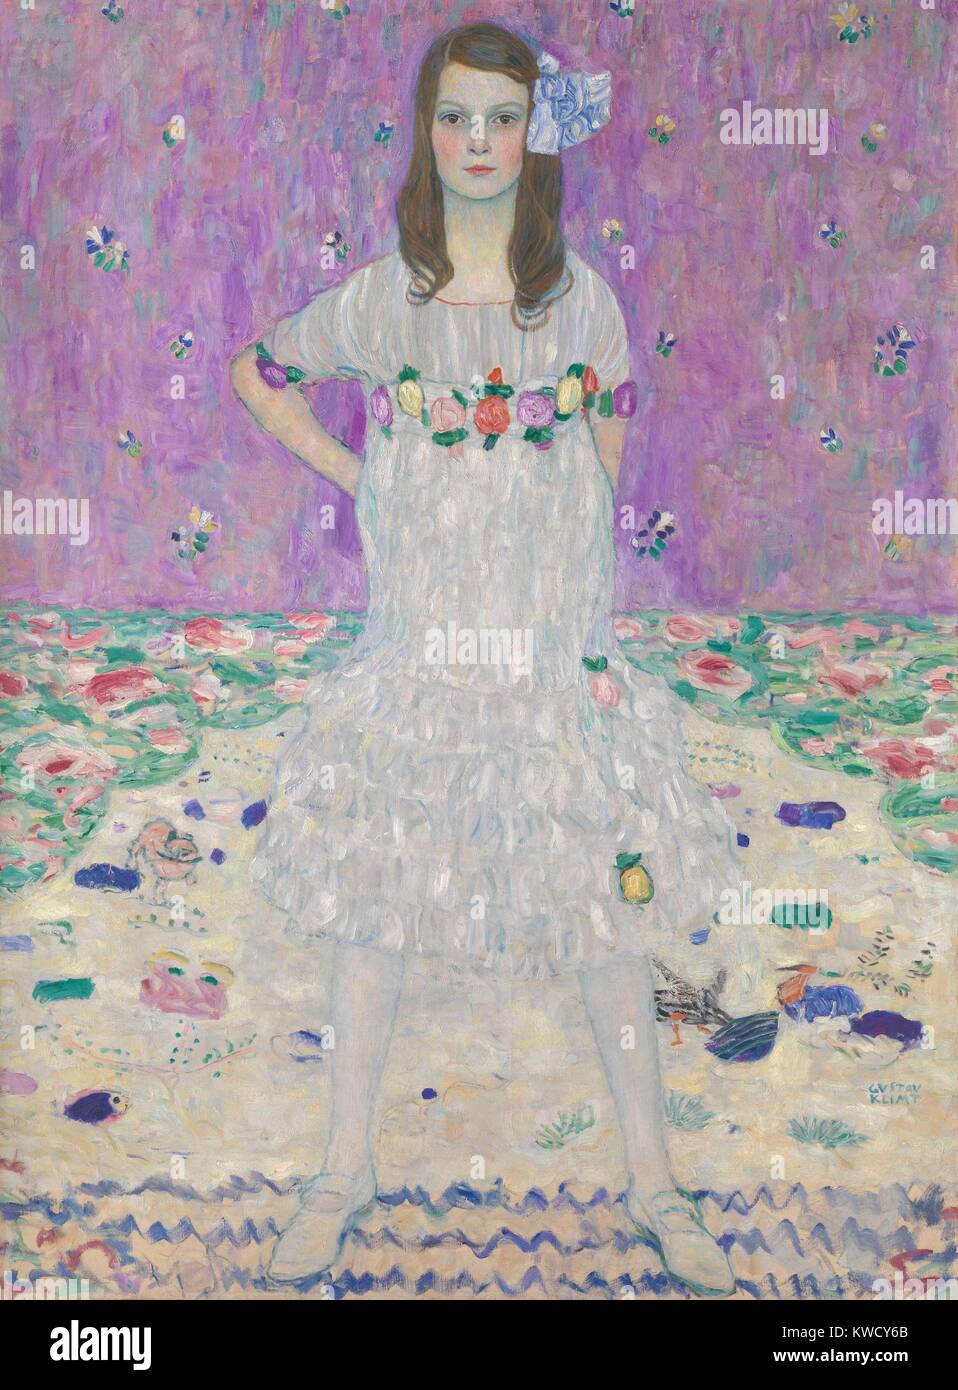 Mada Primavesi, de Gustav Klimt, 1912-1913, peinture symboliste Autrichien, huile sur toile. Ce portrait dépeint une fillette de 9 ans, debout devant les modèles de couleur pastel. Ses parents étaient Otto et Eugenia Primavesi, patrons de groupes arts viennois (BSLOC 2017 5 128) Banque D'Images